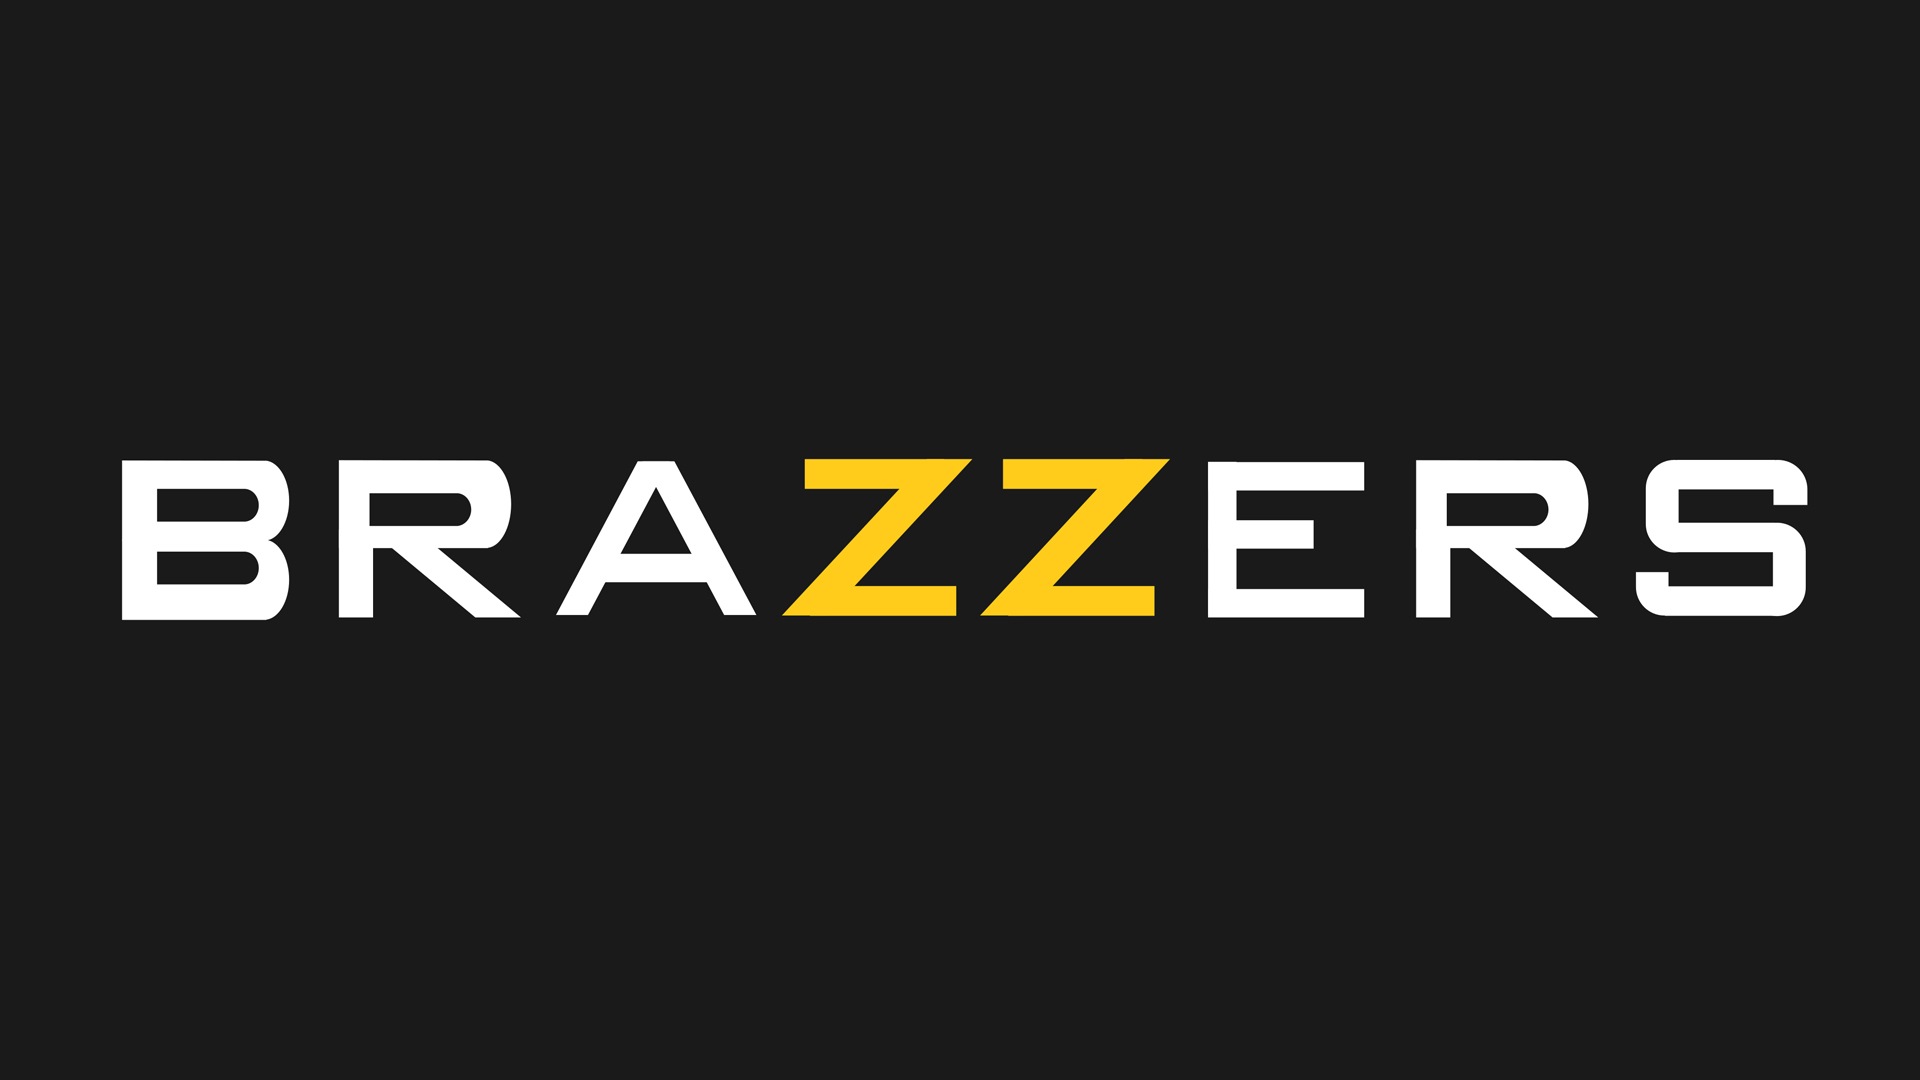 zazzers.com